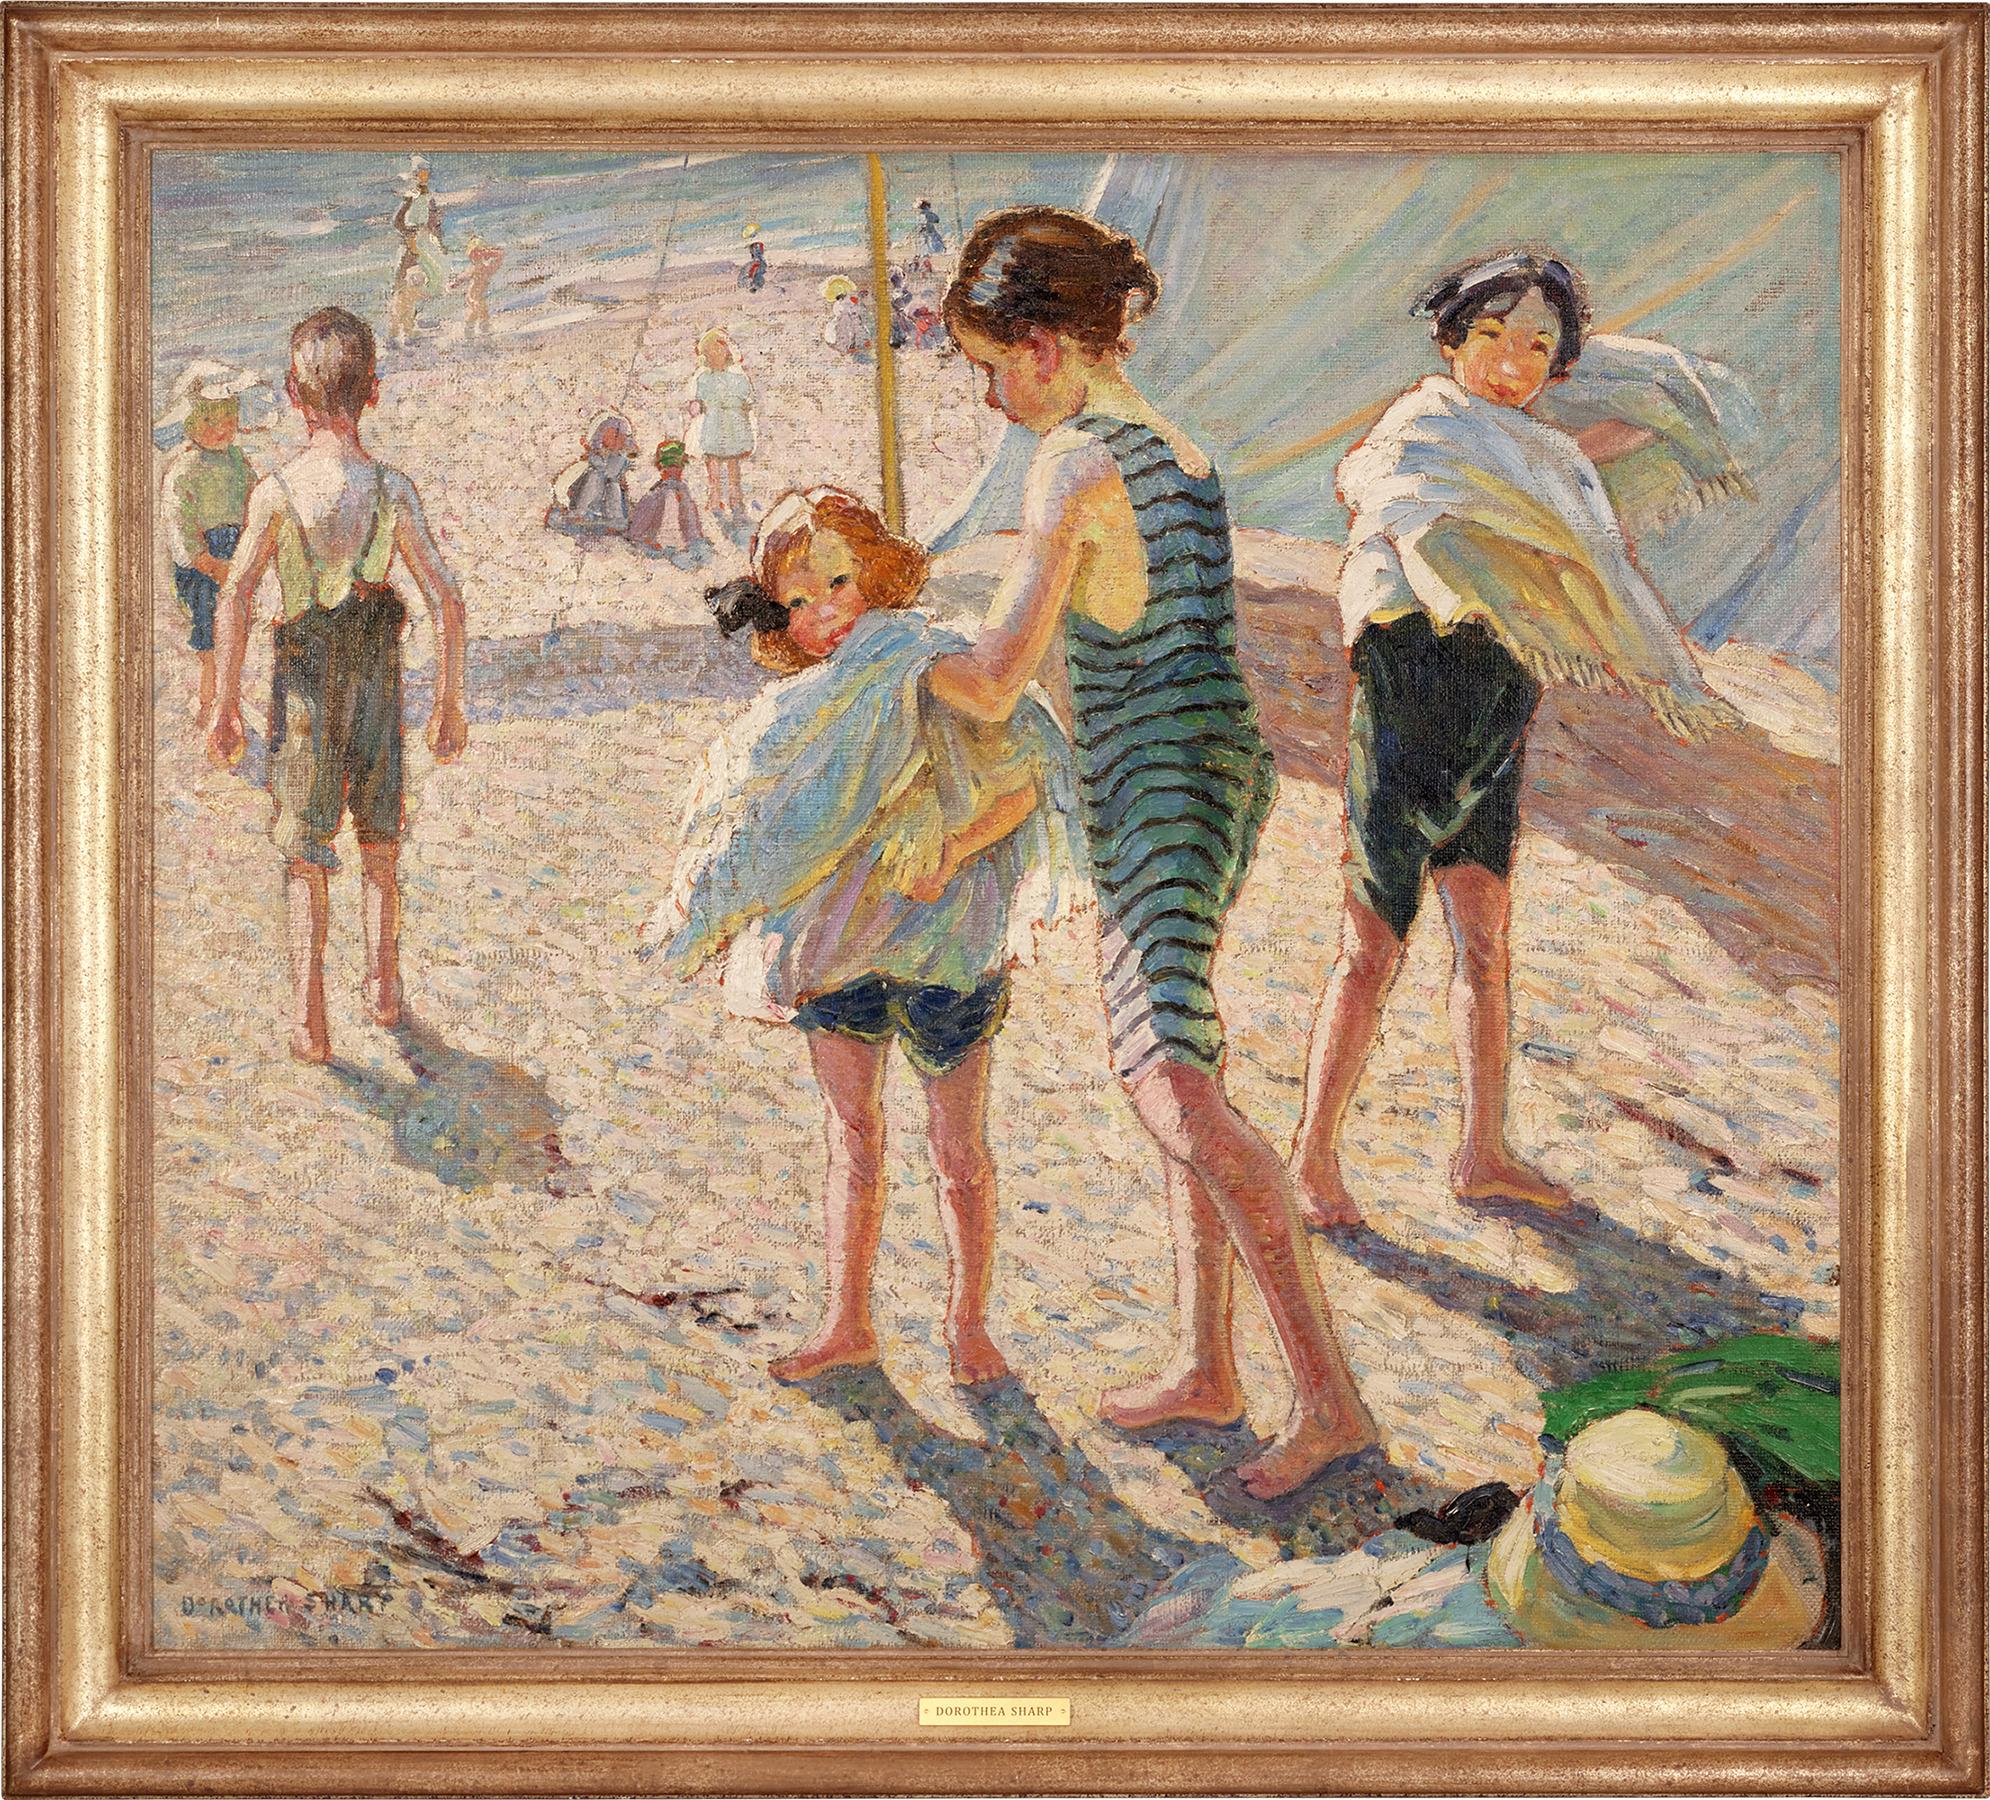 A Day On The Beach von Dorothea Sharp 1